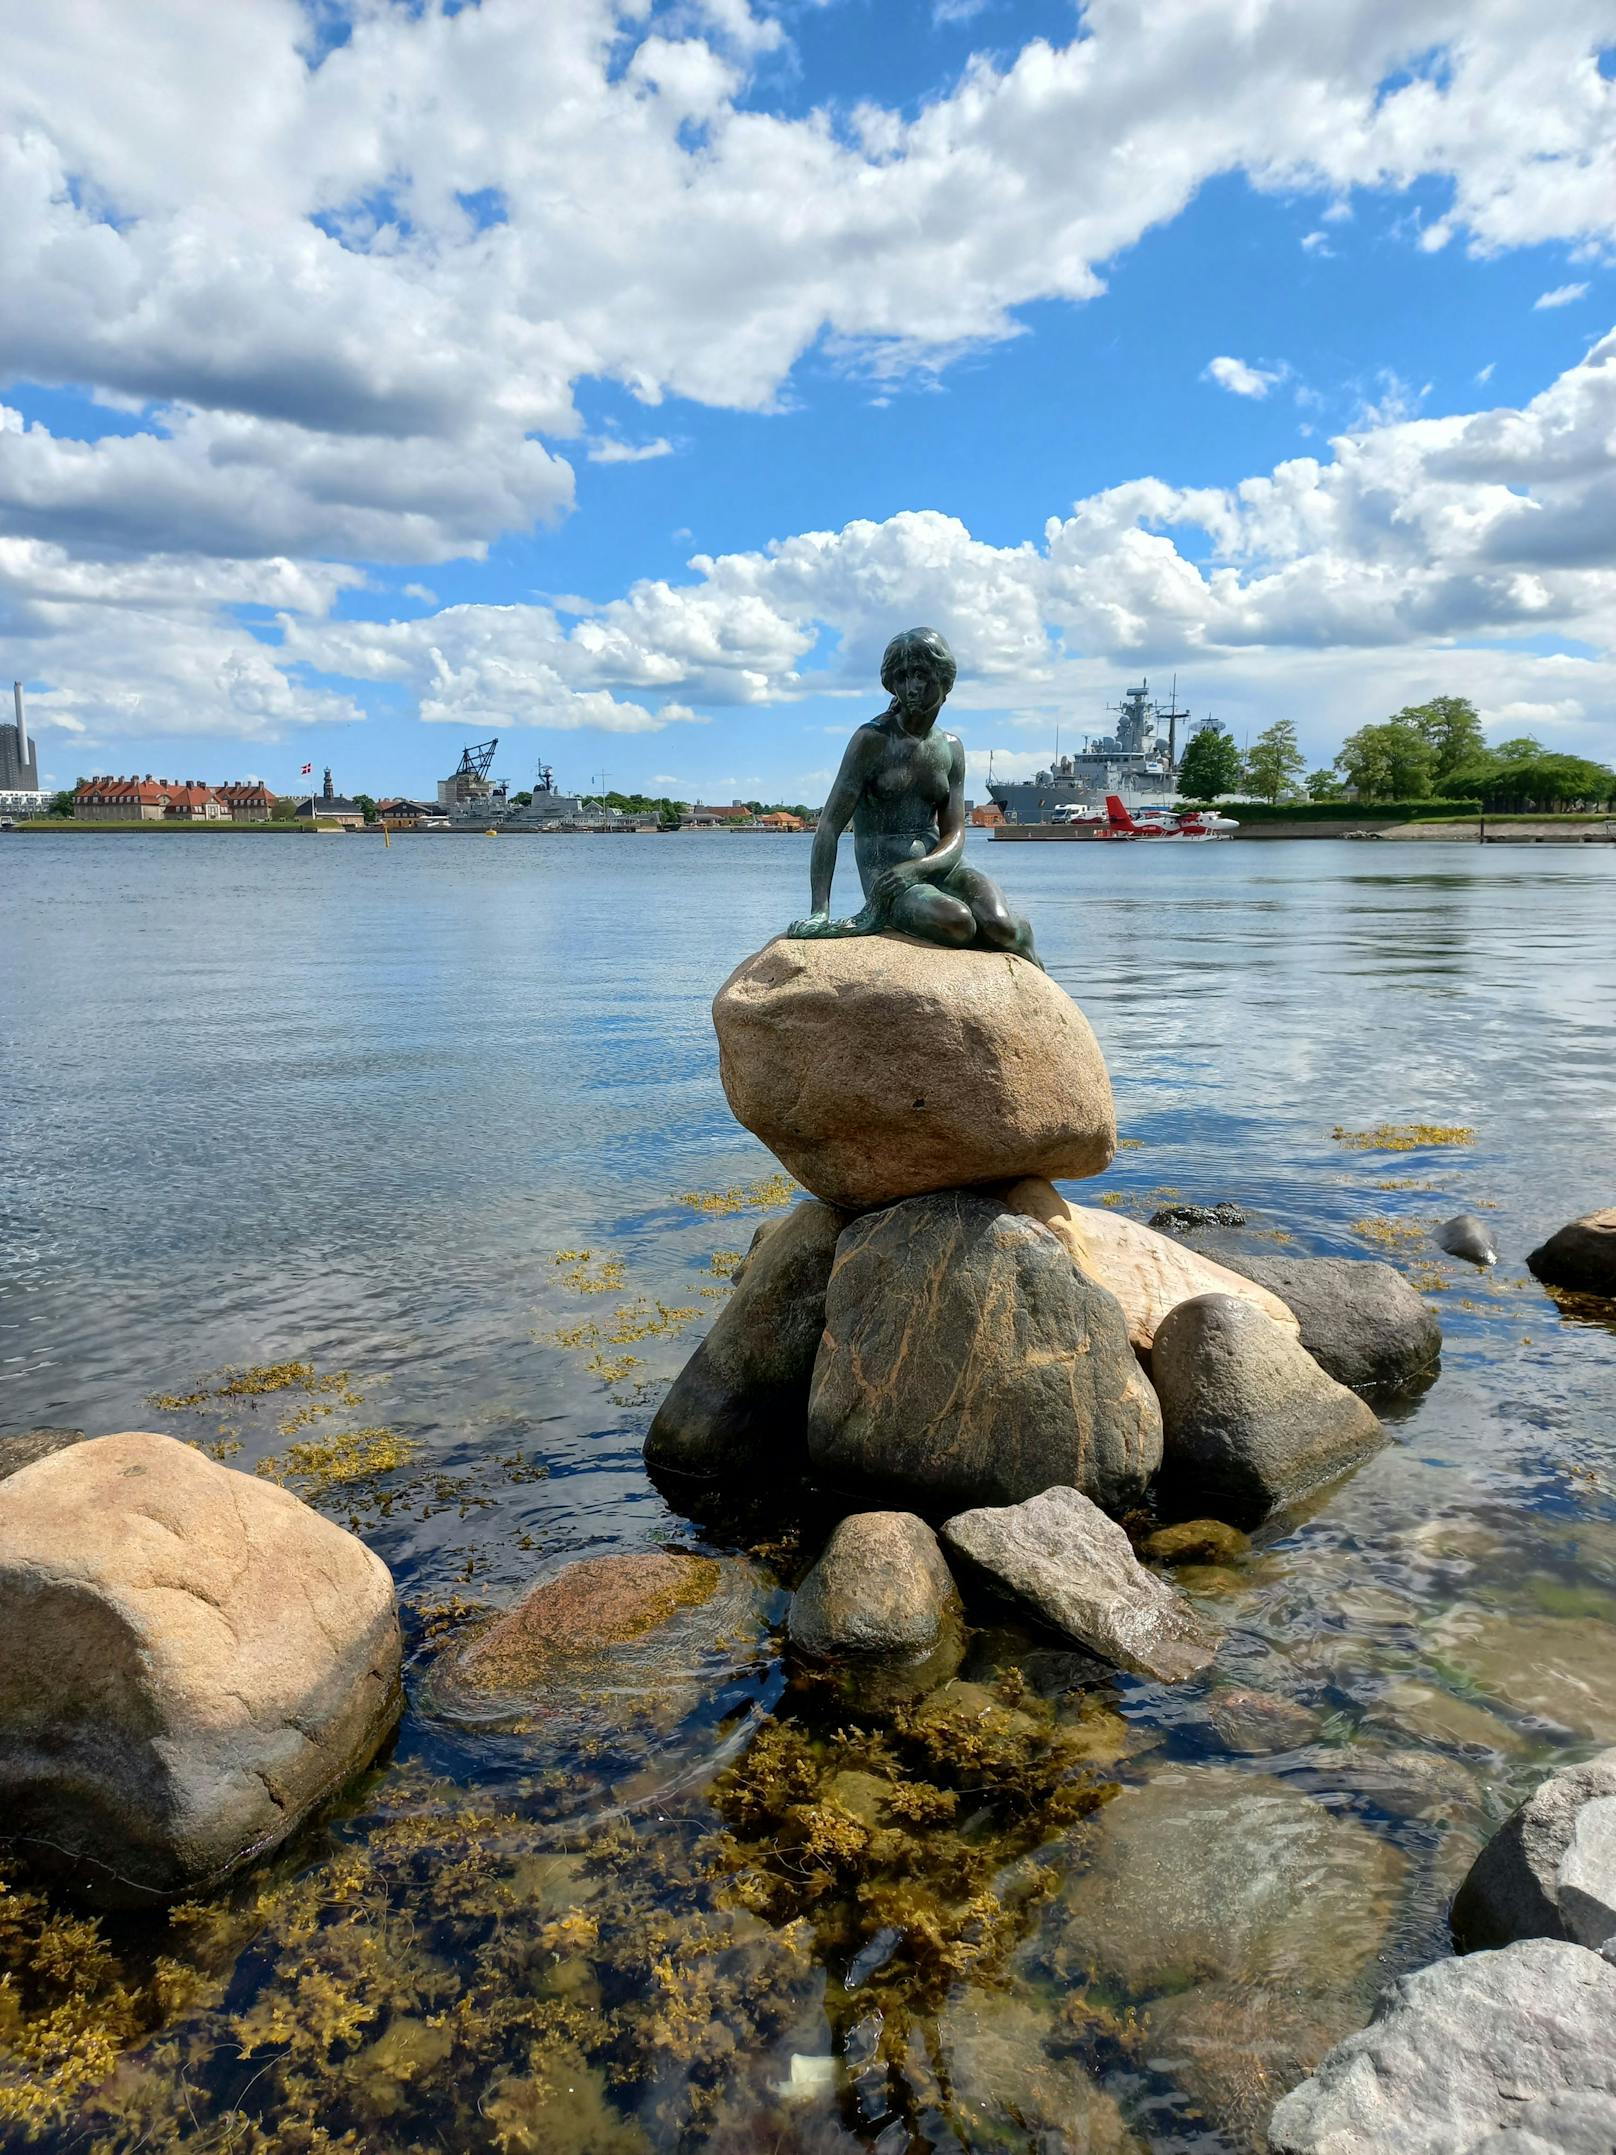 Attraktion Nummer zwei: die kleine Meerjungfrau. Eine Bronzefigur an der Uferpromenade.&nbsp;Dichter Hans Christian Andersen lieferte die literarische Vorlage.